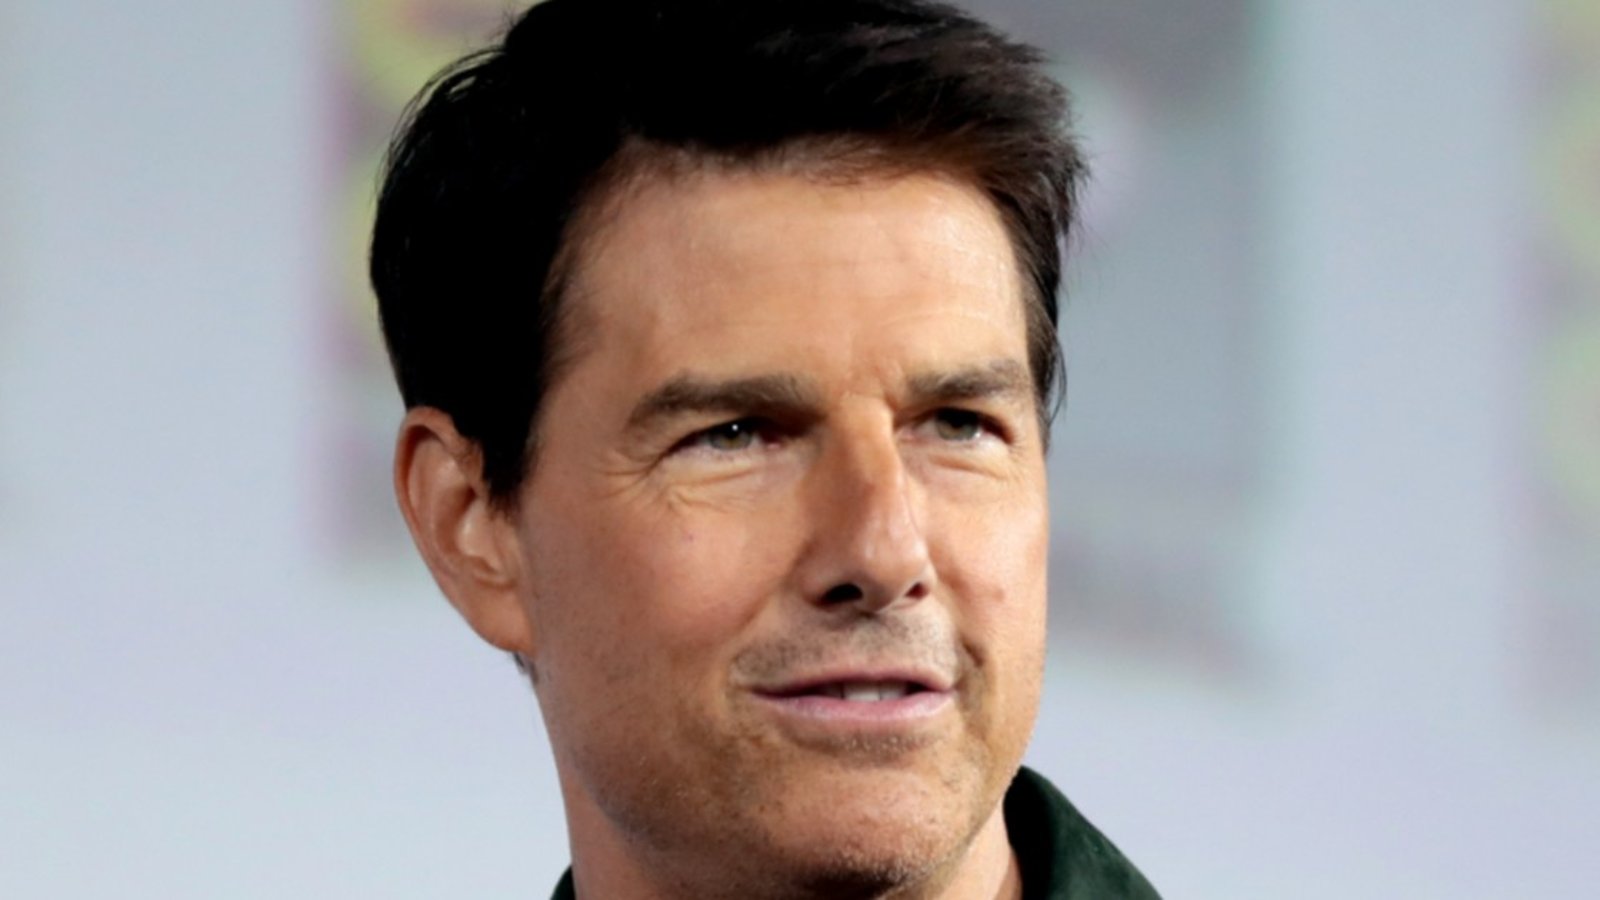 Le visage boursouflé de Tom Cruise suscite l'incompréhension des ses fans